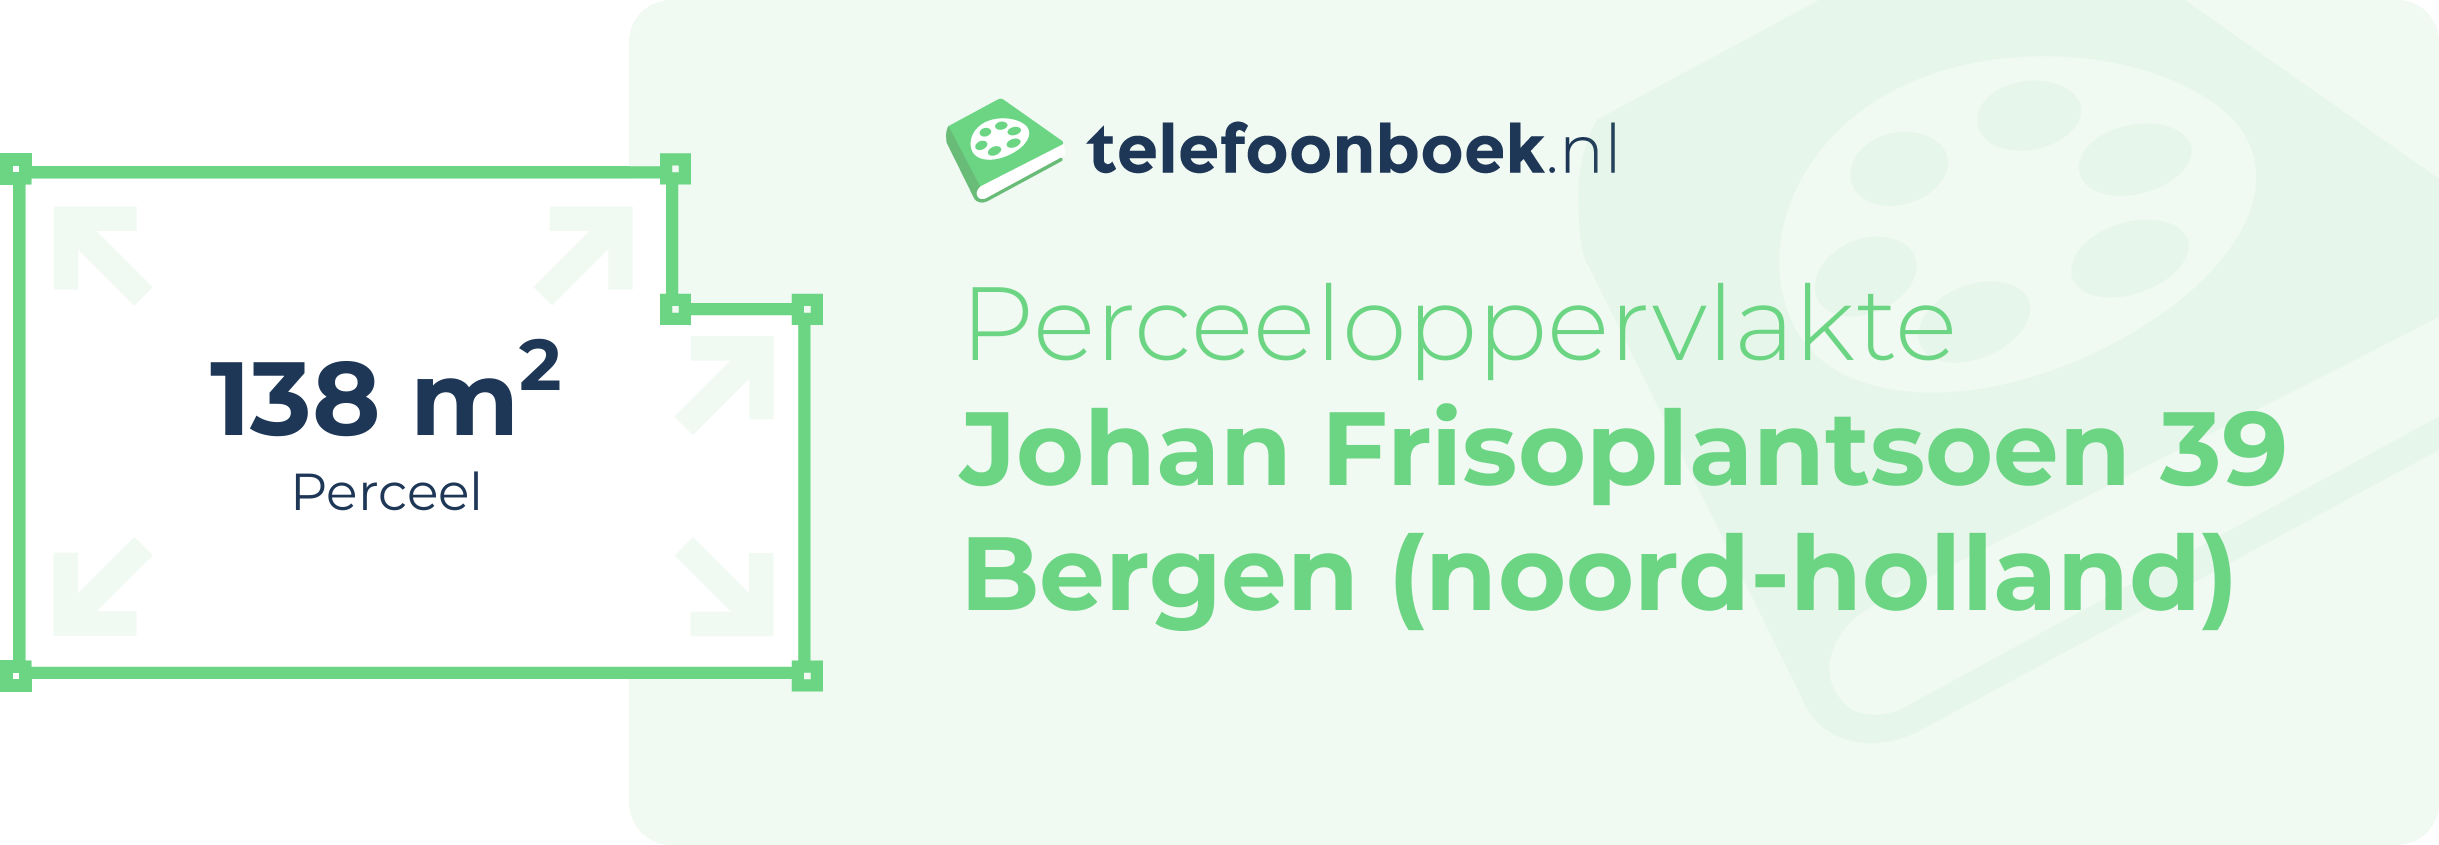 Perceeloppervlakte Johan Frisoplantsoen 39 Bergen (Noord-Holland)